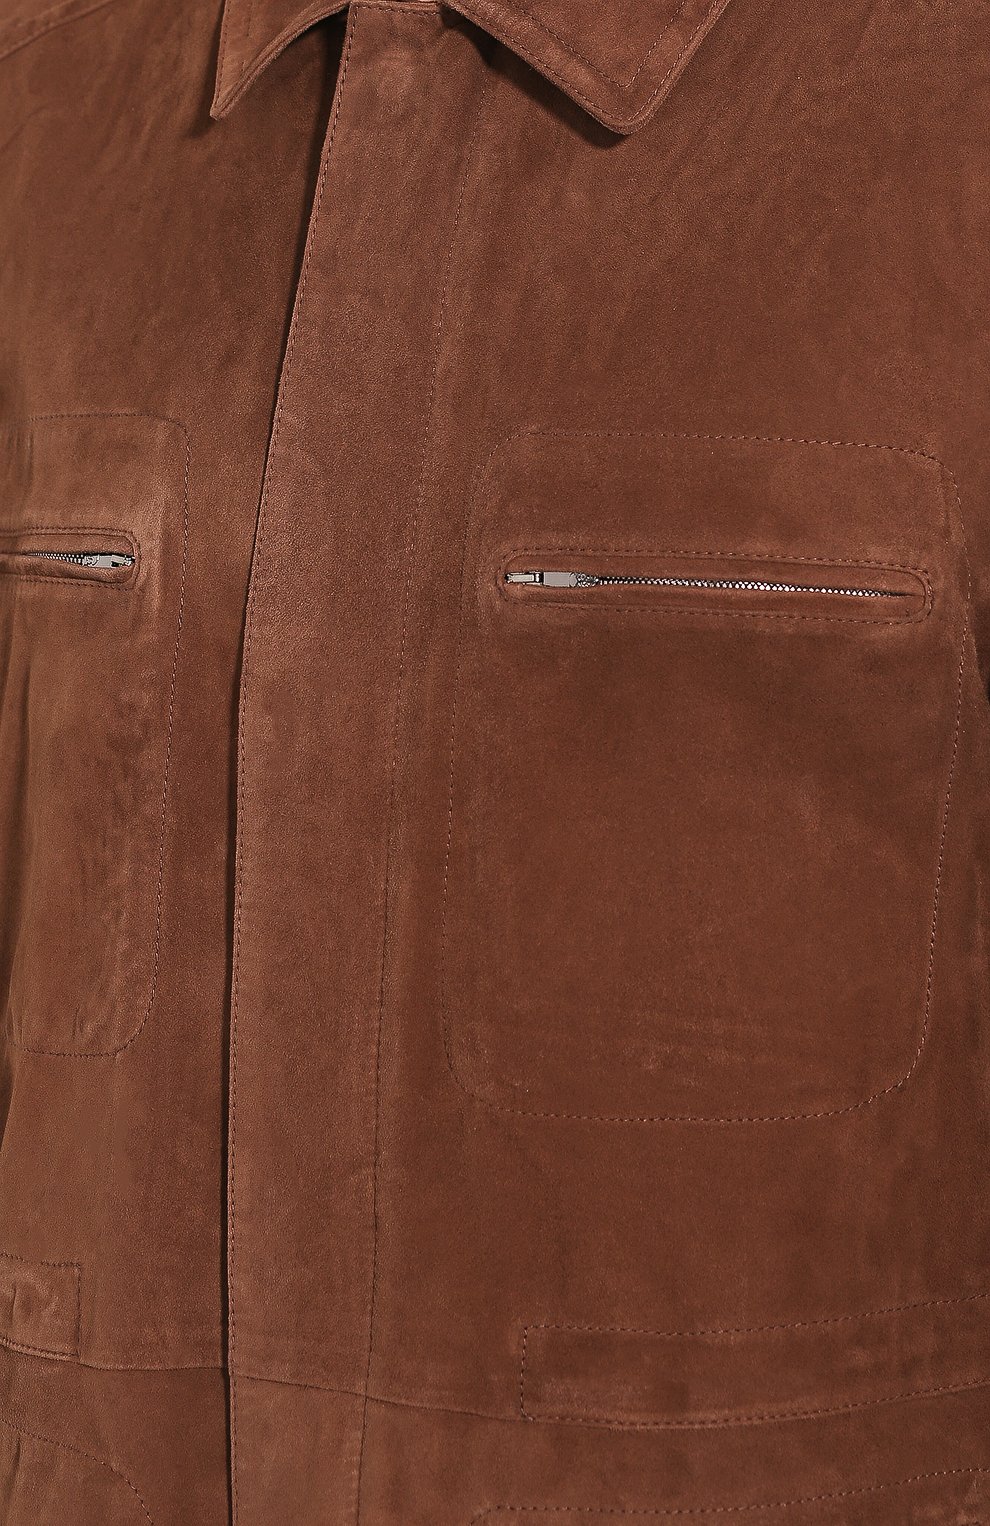 Мужская замшевая куртка CORNELIANI коричневого цвета, арт. 8525W2-0120103/00 | Фото 5 (Кросс-КТ: Куртка; Материал внешний: Замша, Натуральная кожа; Рукава: Длинные; Длина (верхняя одежда): До середины бедра, Короткие; Мужское Кросс-КТ: Верхняя одежда, Кожа и замша)